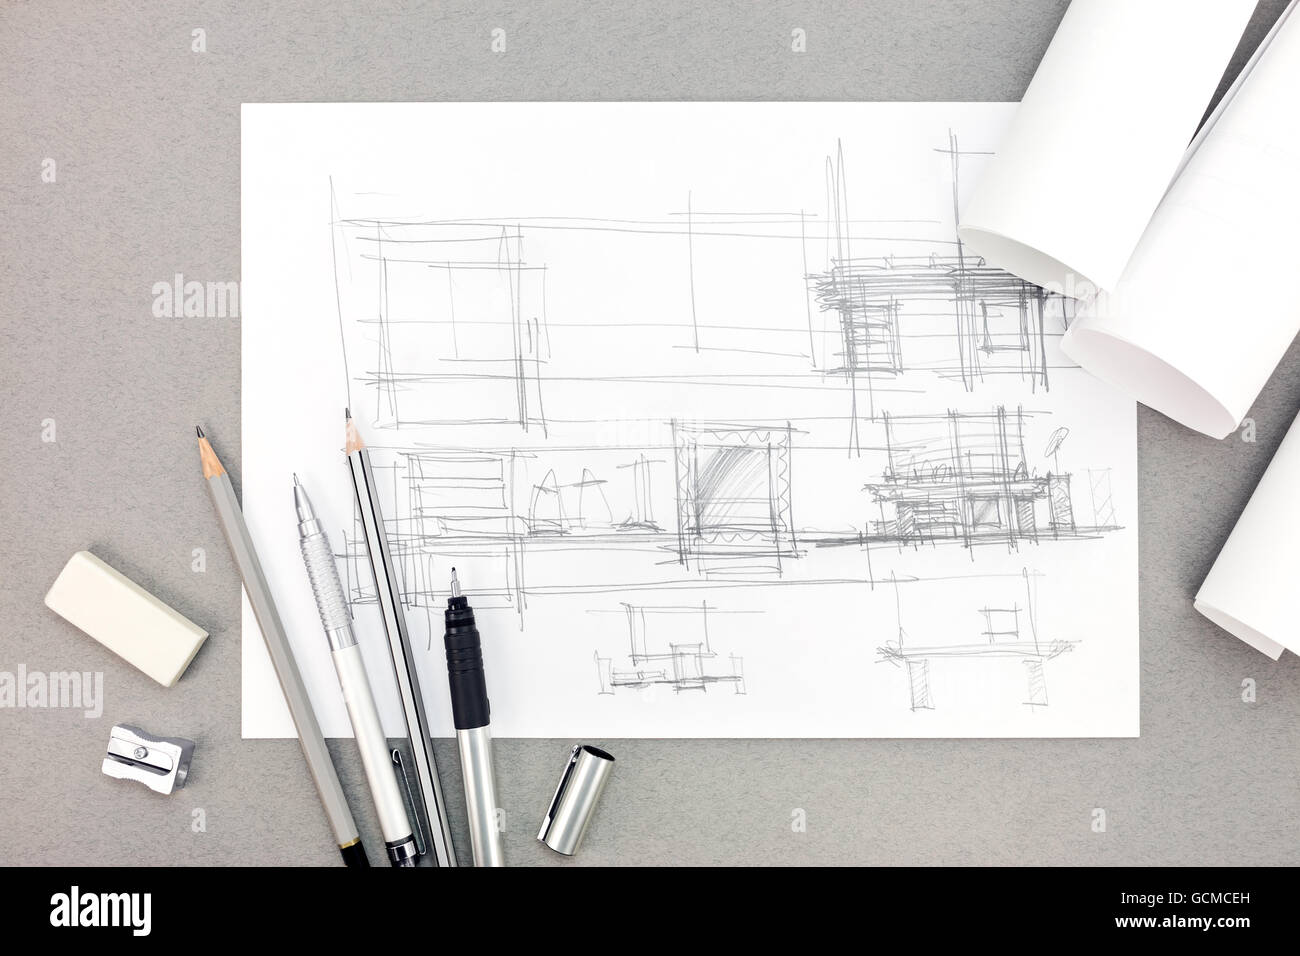 L'intérieur de l'architecture dessin à main concept rénovation avec bobines de papier et crayons Banque D'Images